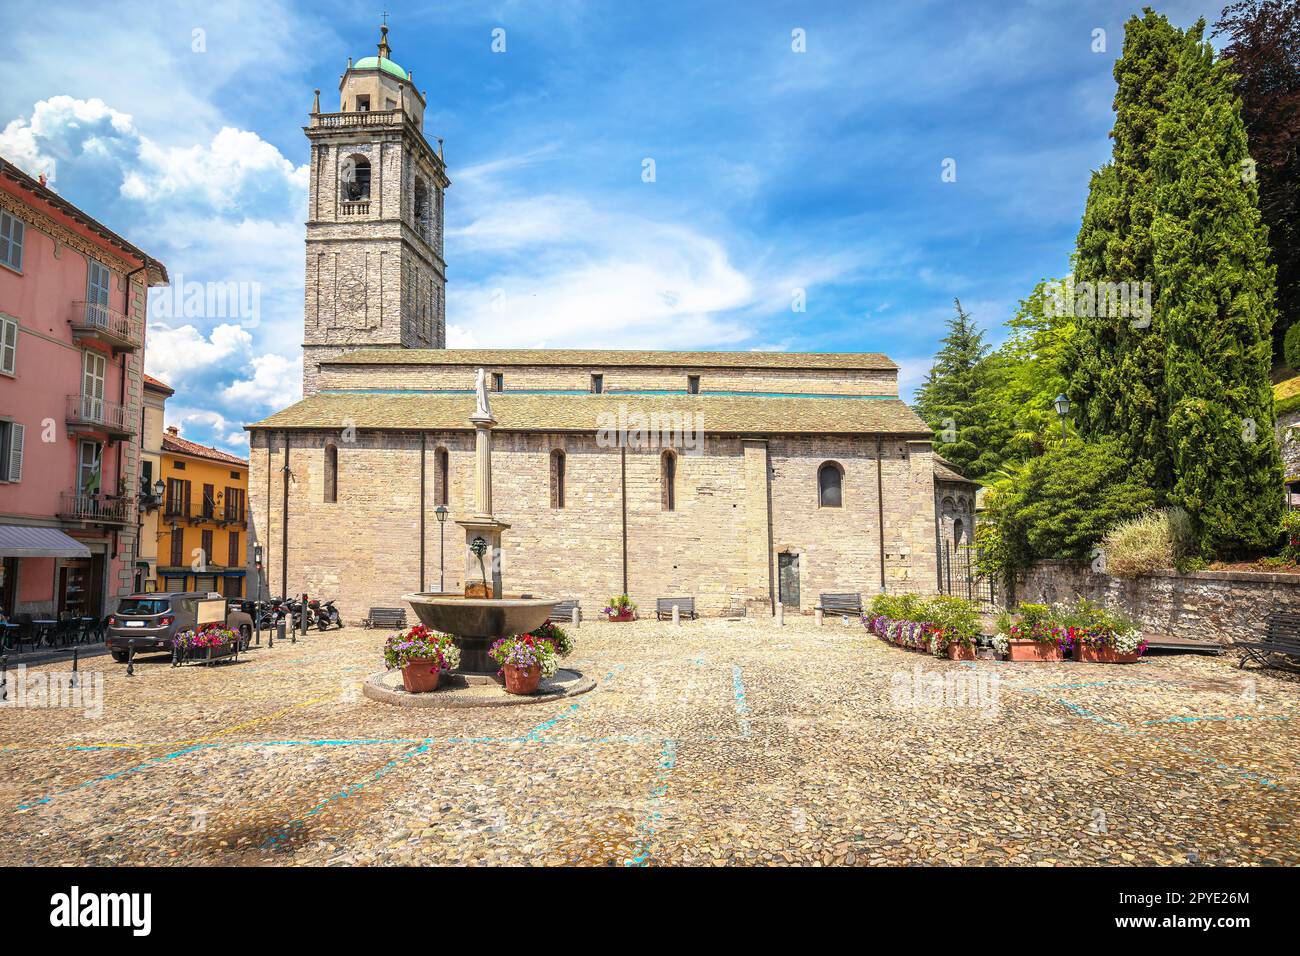 Ville de Bellagio église place vue sur l'architecture colorée Banque D'Images